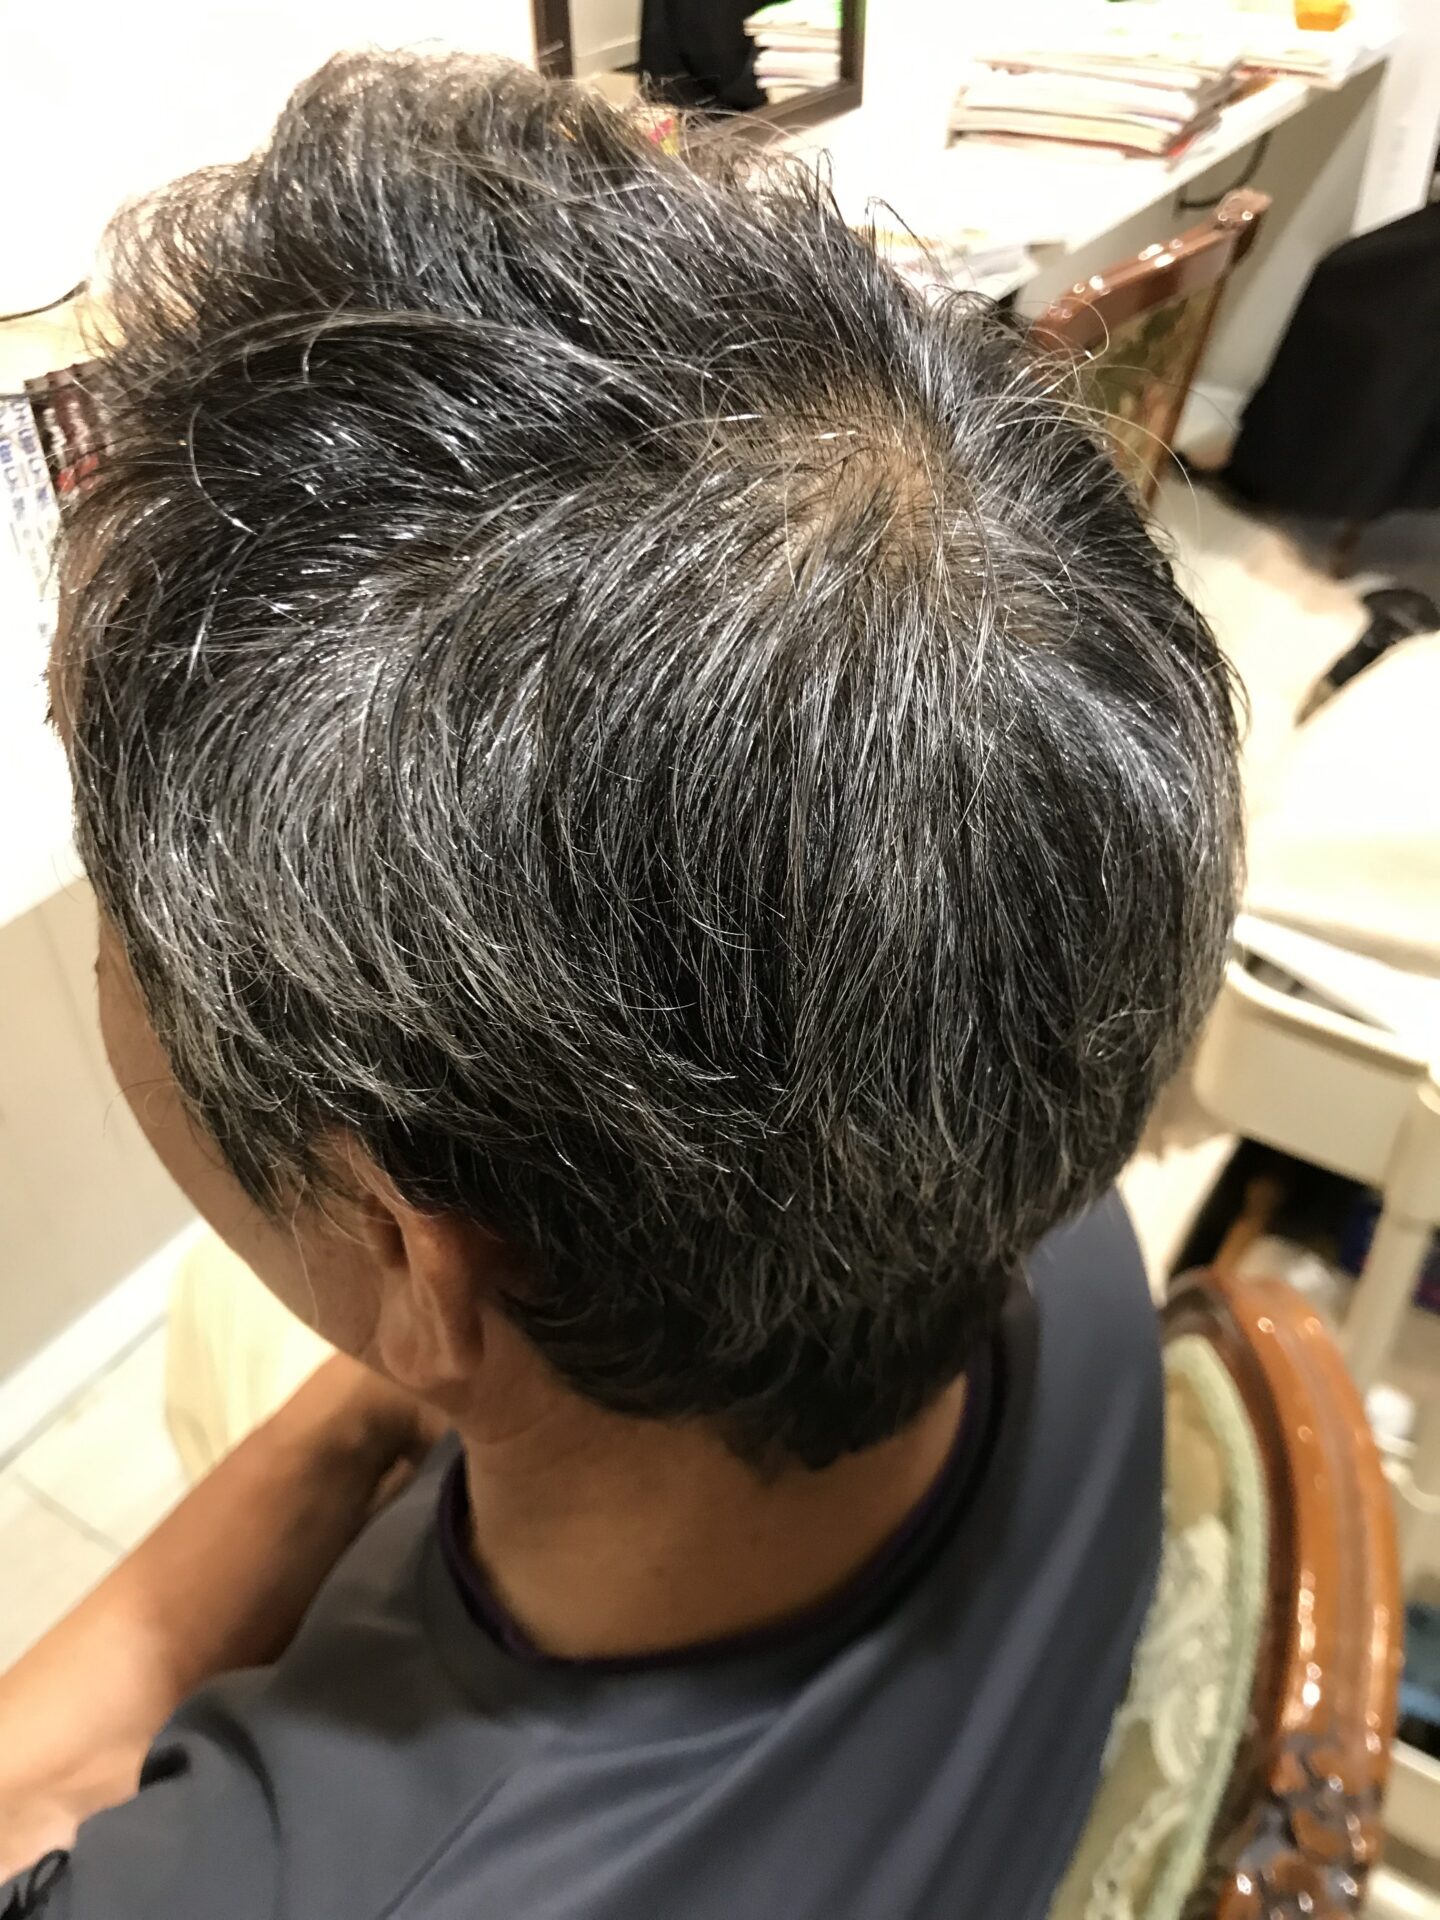 メンズビゲンワンプッシュ6aアッシュブラウンは白髪多めの40 50代の男性におすすめ 髪トレブログ